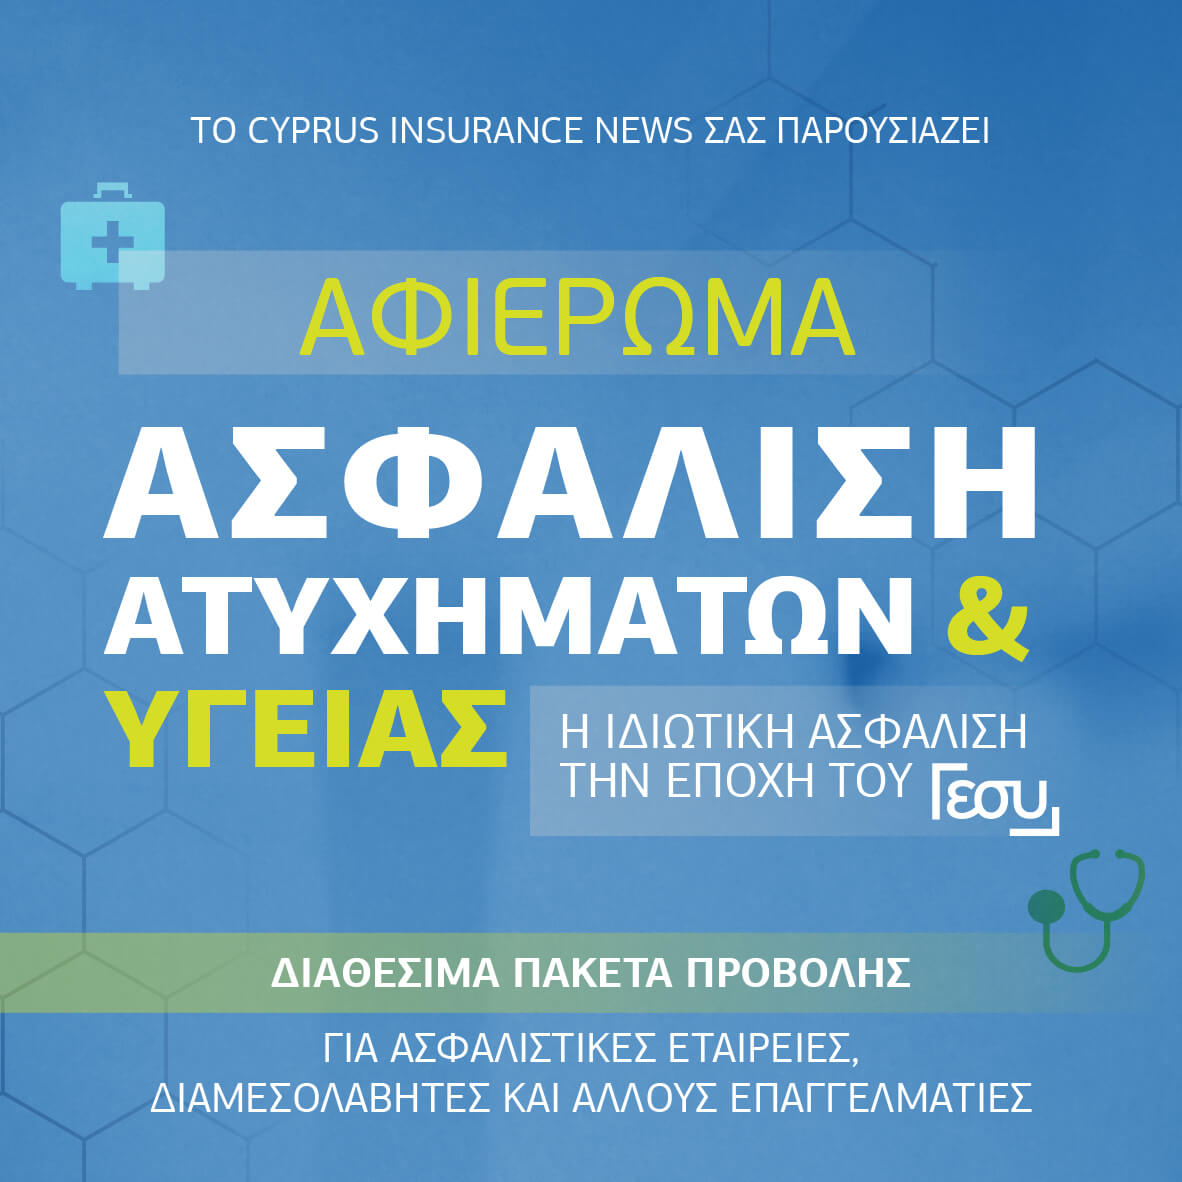 Η Ιδιωτική Ασφάλιση την εποχή του ΓεΣΥ – Έρχεται το 3ο Αφιέρωμα του Cyprus Insurance News με θέμα την Ασφάλιση Υγείας!